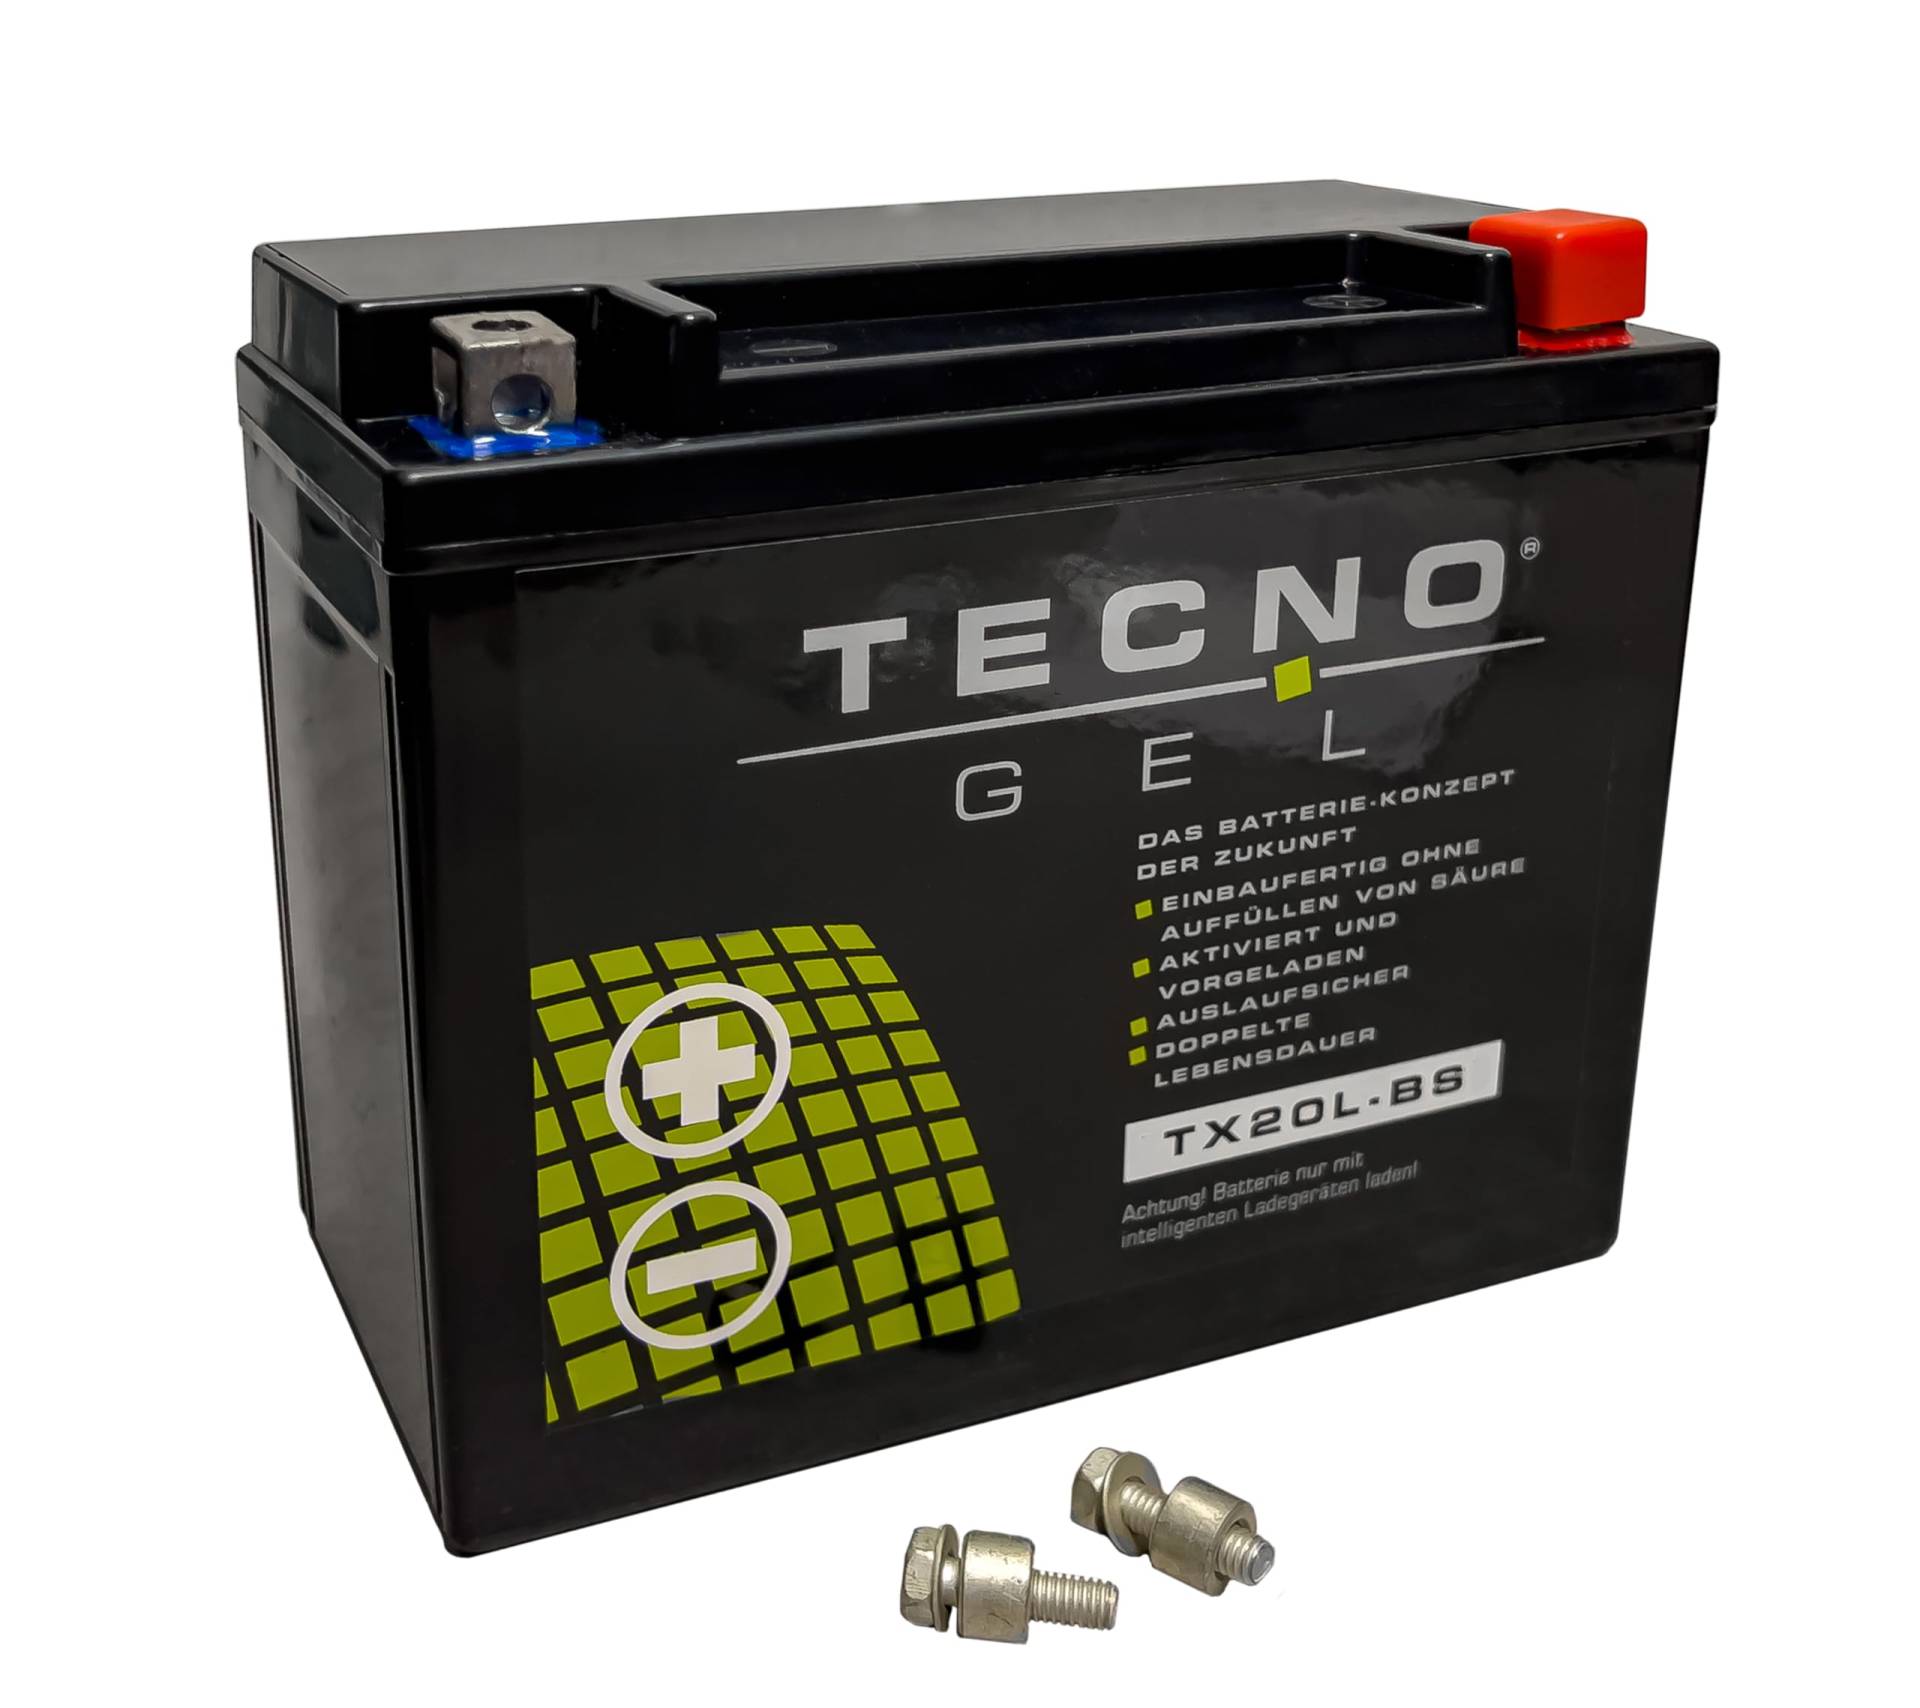 TECNO-GEL Motorrad-Batterie für YTX20L-BS für MOTO GUZZI California 1100 ie Vintage 2006-2014, 12V Gel-Batterie 20Ah (DIN 82000), 175x87x155 mm von Wirth-Federn